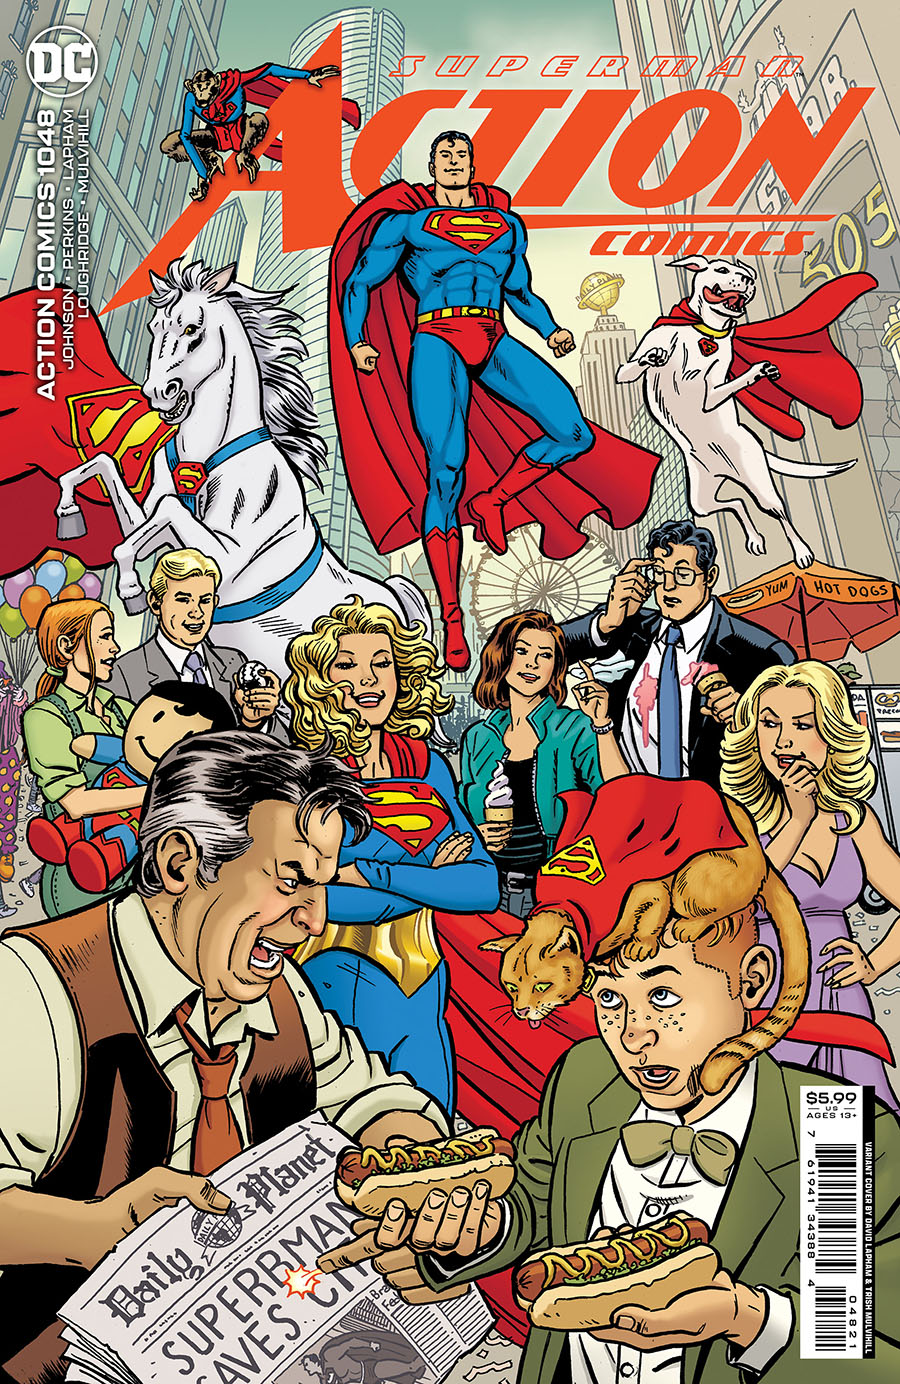 Action Comics Vol 2 #1048 Cover B Variant David Lapham Card Stock Cover (Kal-El Returns Part 3)